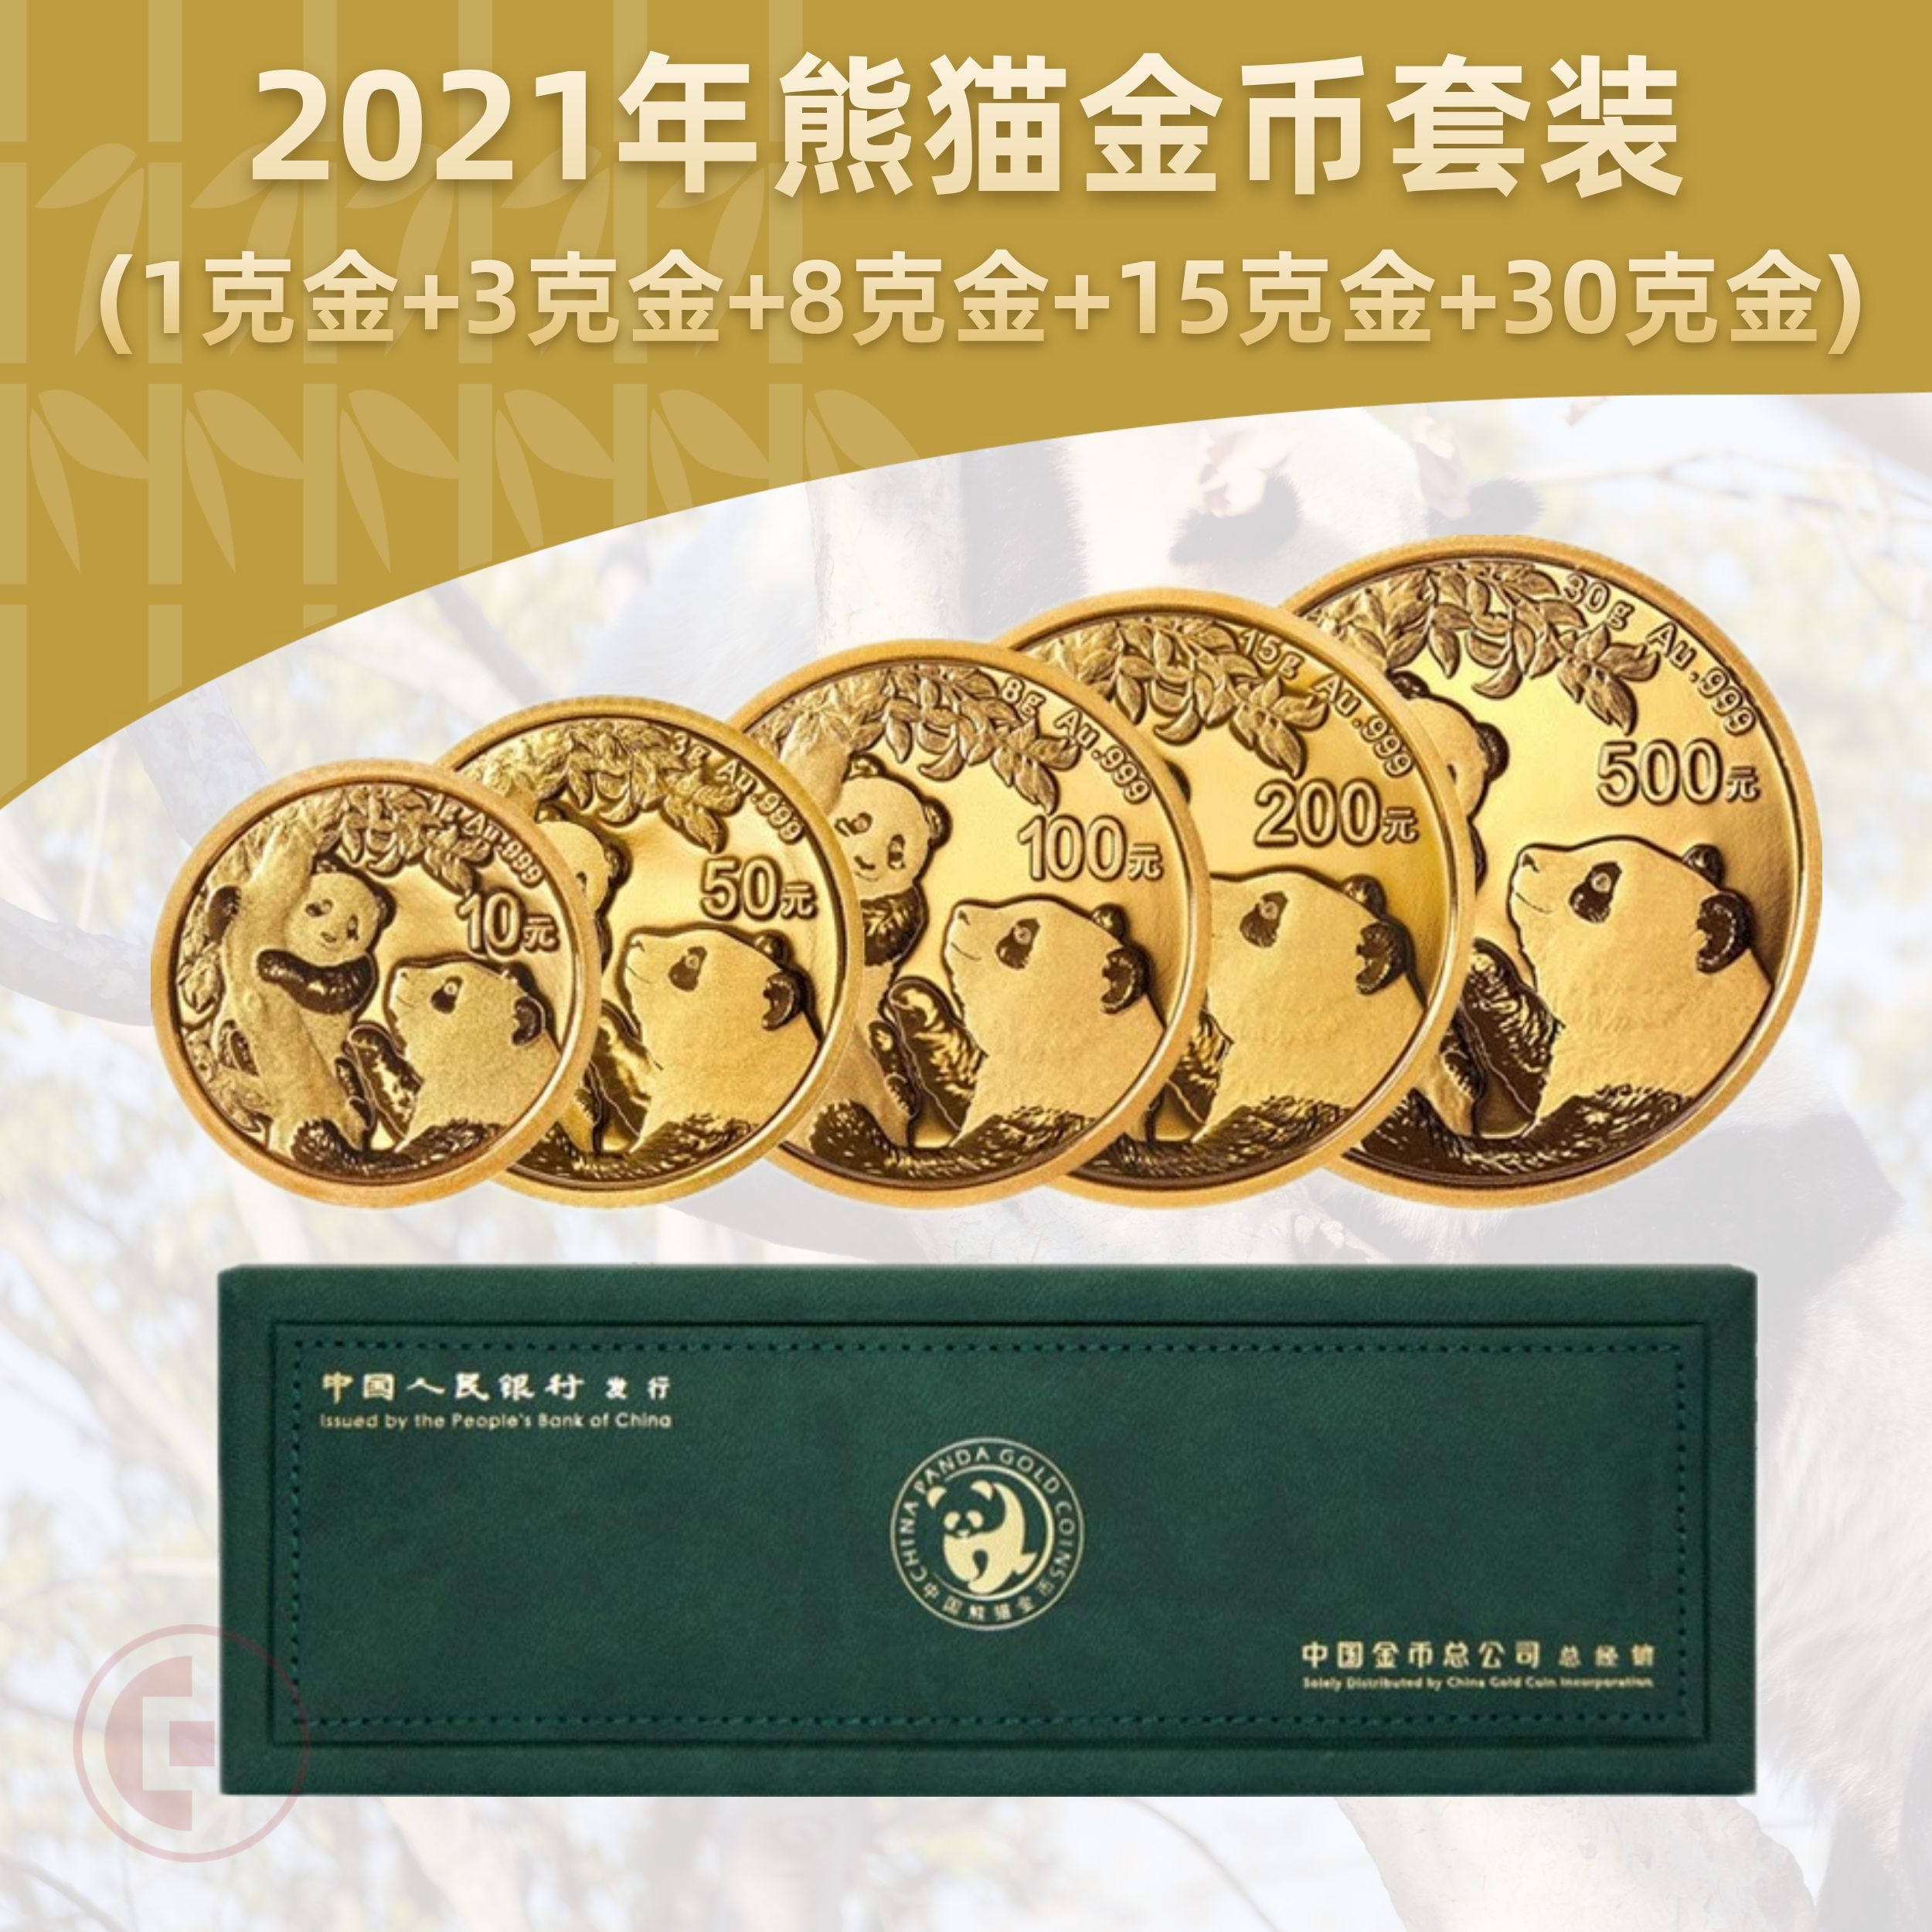 2021熊猫金币5枚套装（1克金+3克金+8克金+15克金+30克金）